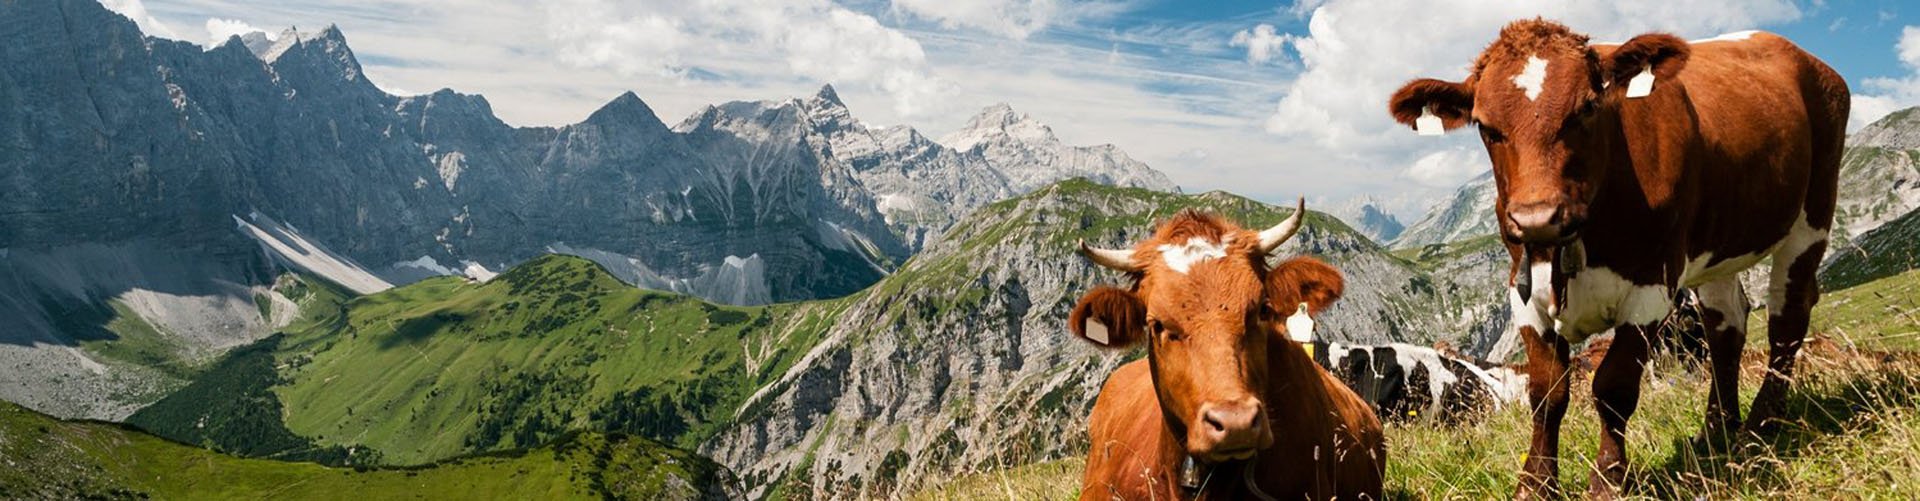 Oostenrijk, Salzburgerland - bergen milka koeien